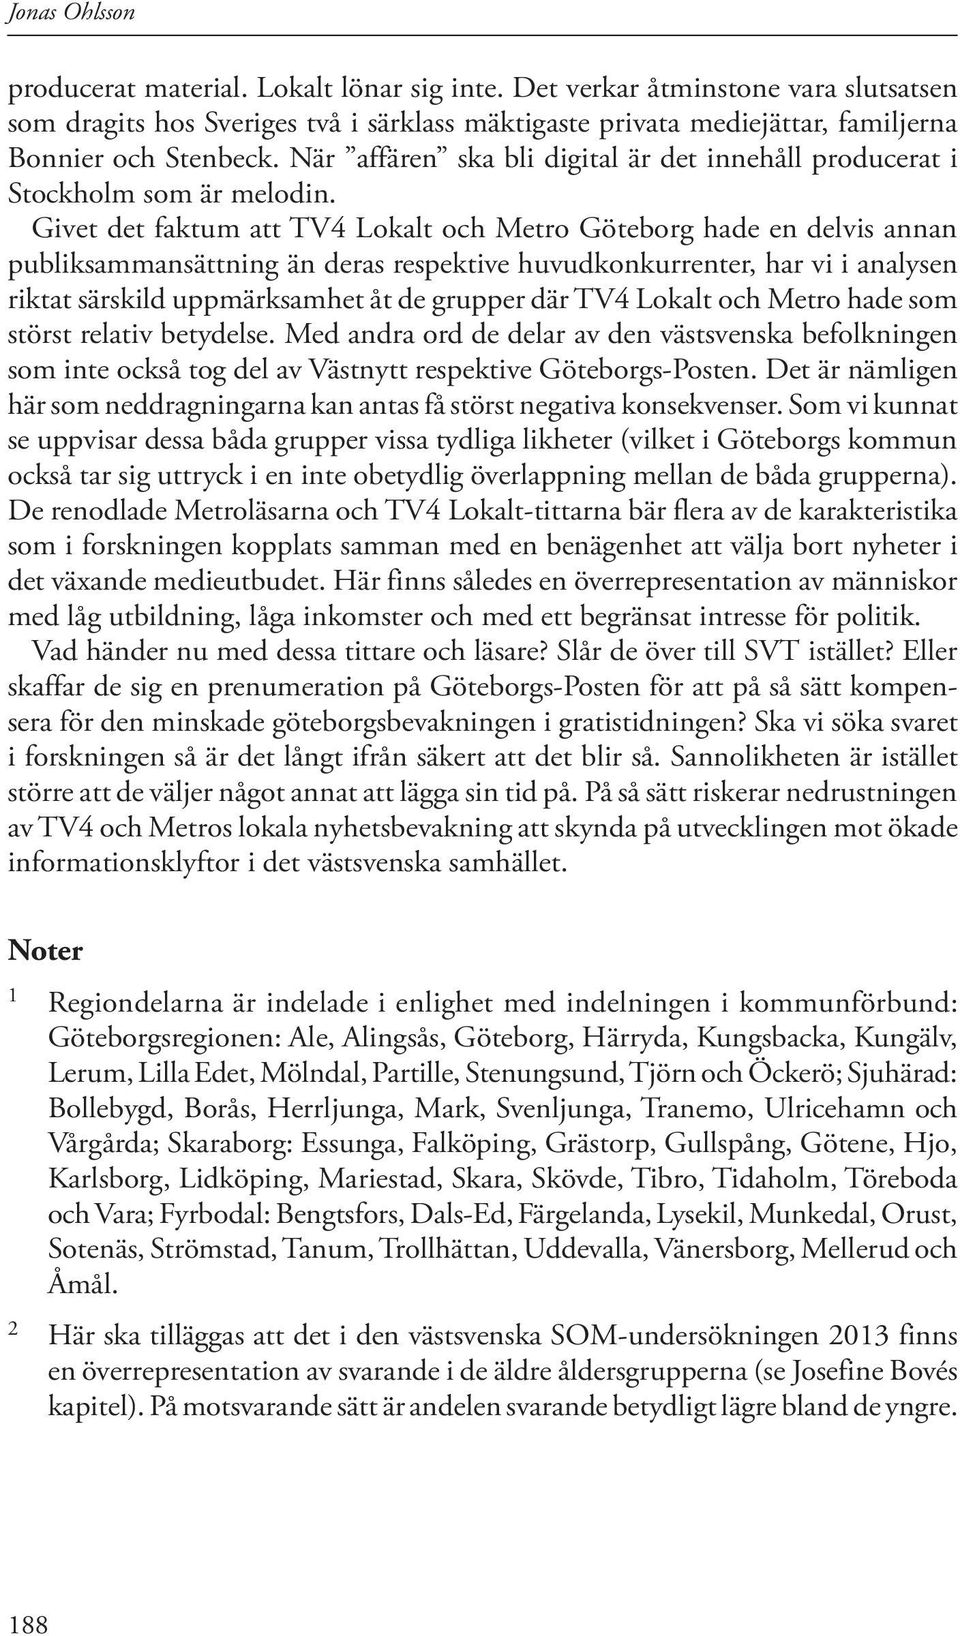 Givet det faktum att TV4 Lokalt och Metro Göteborg hade en delvis annan publiksammansättning än deras respektive huvudkonkurrenter, har vi i analysen riktat särskild uppmärksamhet åt de grupper där